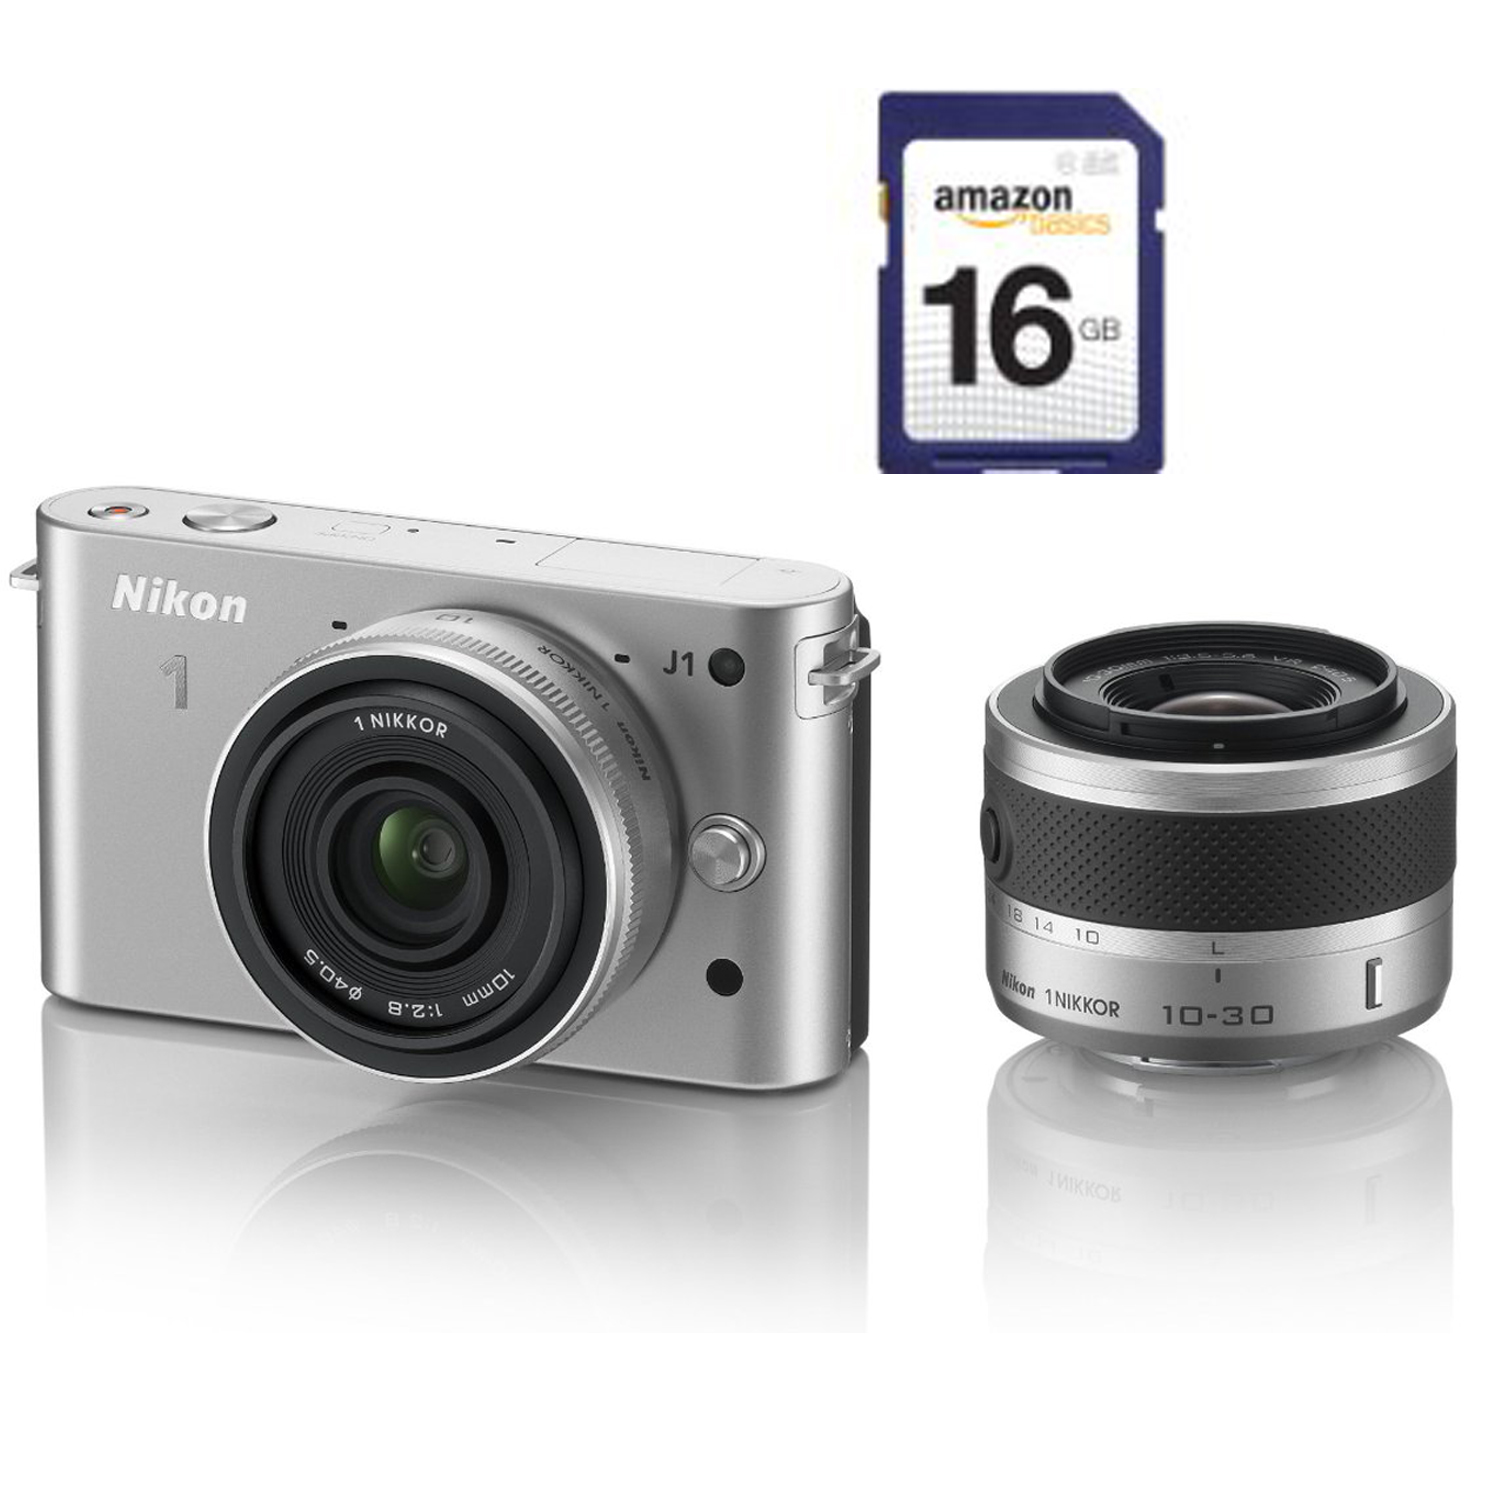 購買一台尼康 Nikon 1系列相機，可同時獲贈一張 Amazon Basics 16 GB 內存卡 